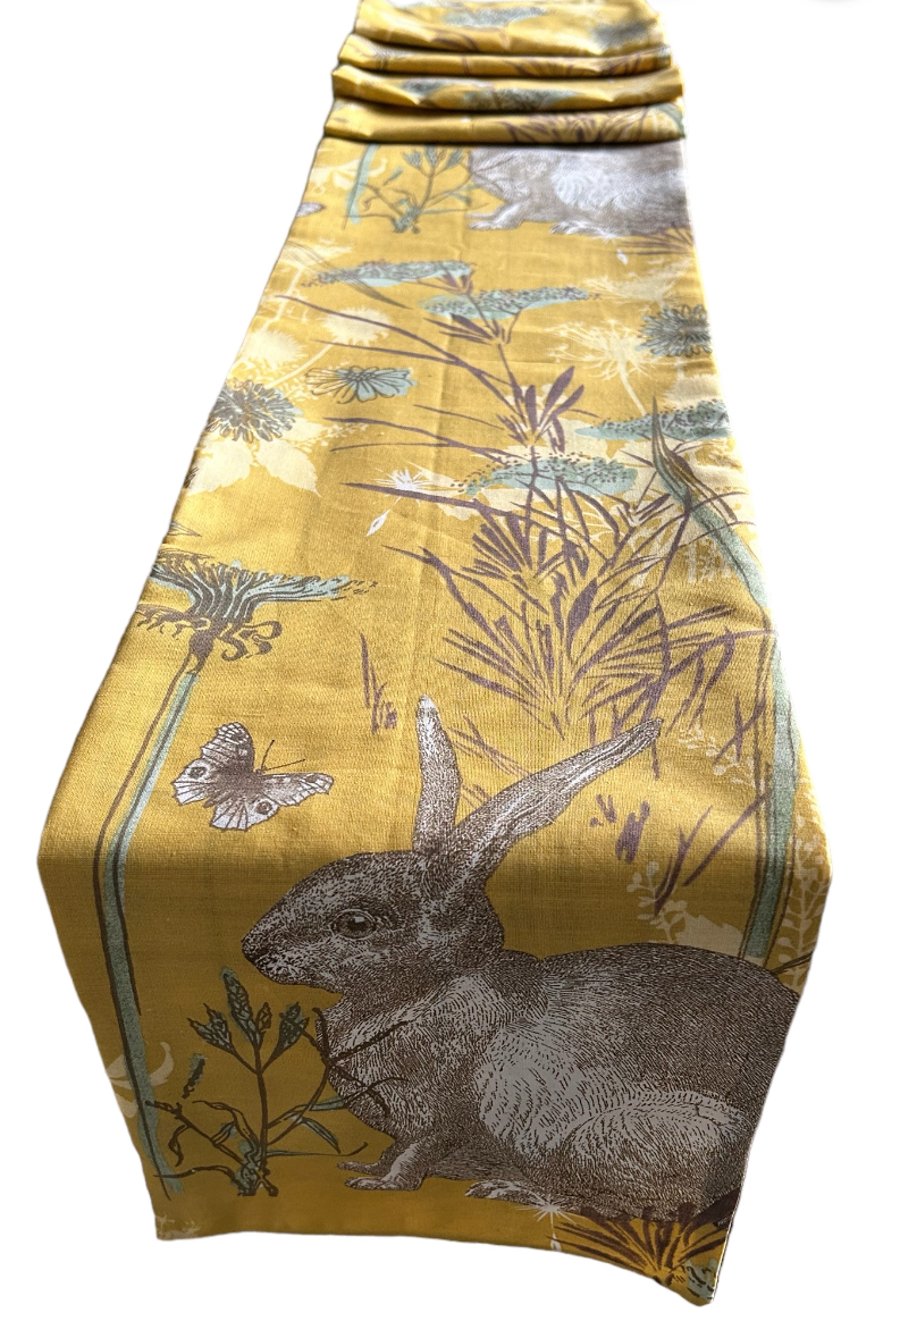 Leaping Hare, Easter Rabbit Table Runner 1.9 x 24cm Gift Idea